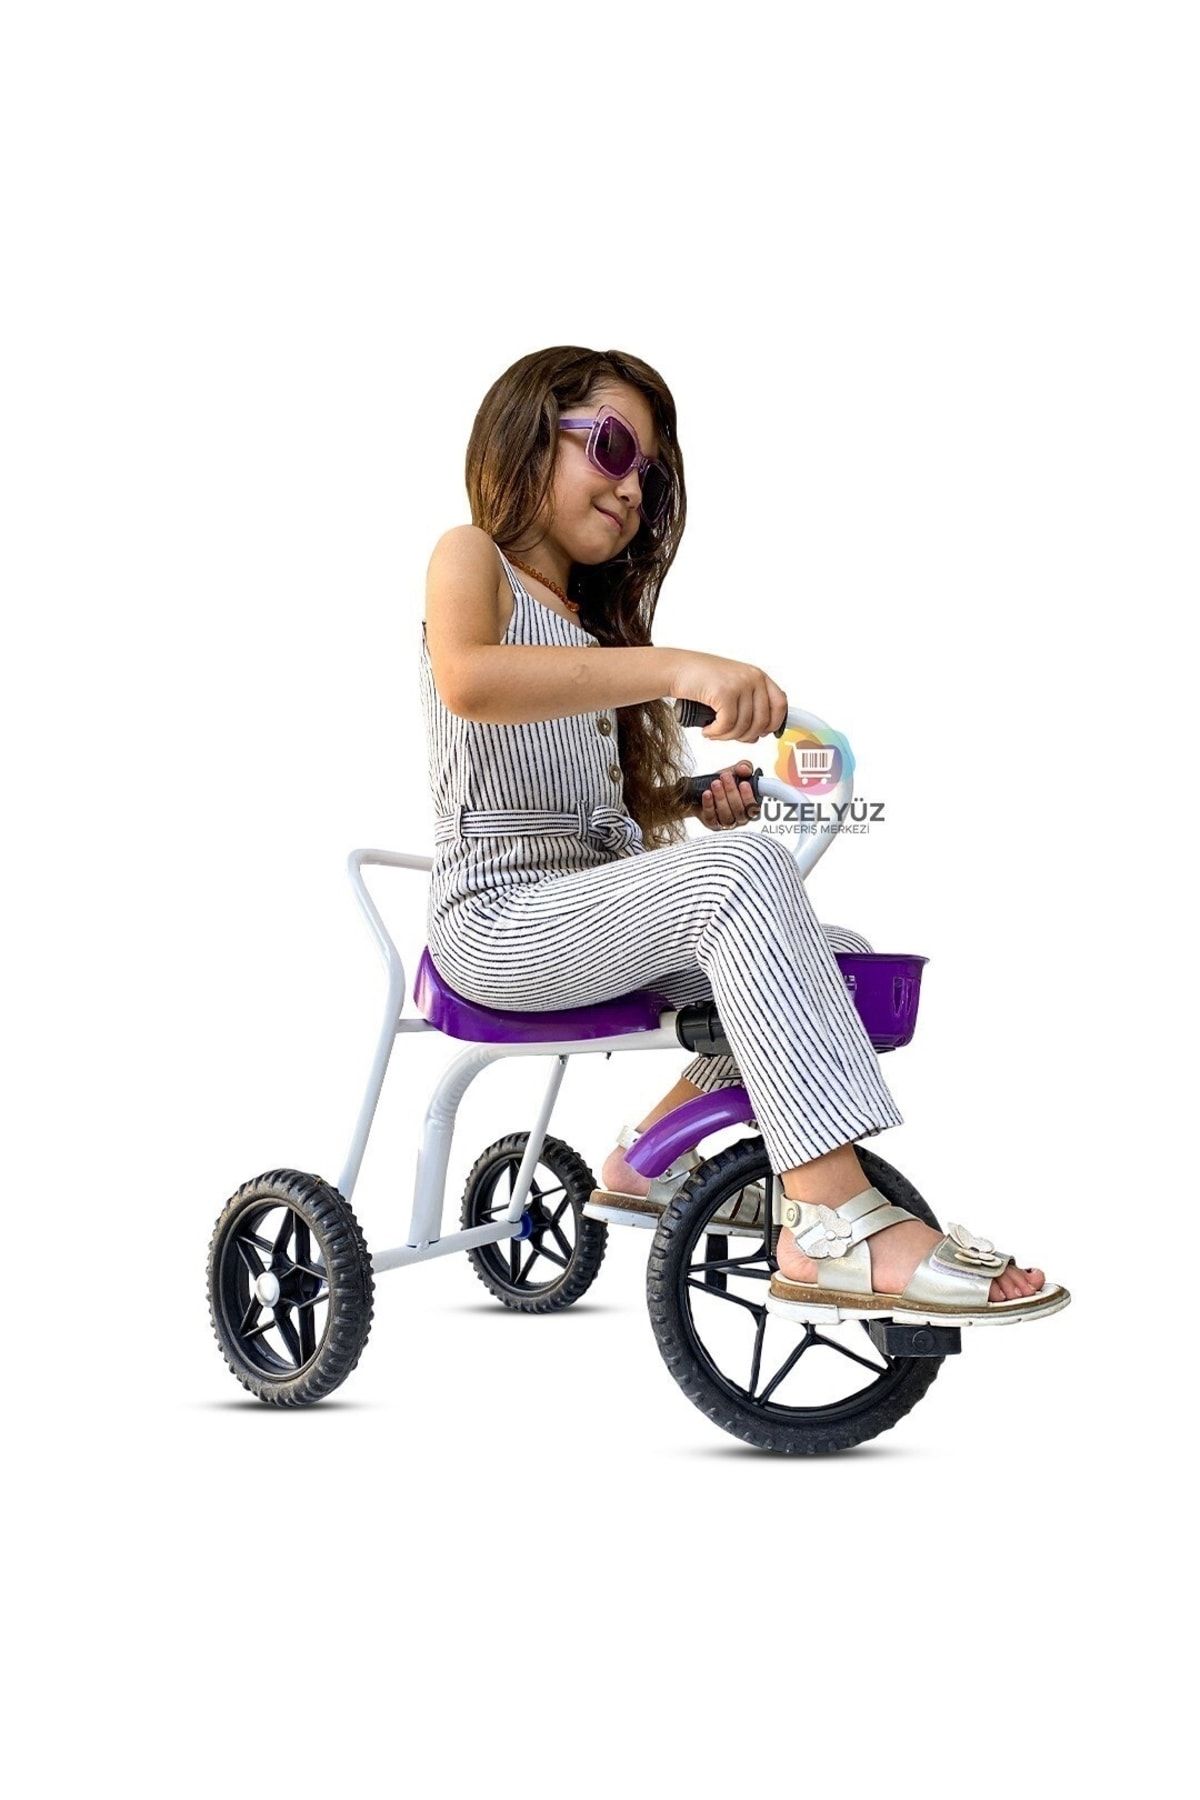 GÜZELYÜZ AVM 3 Teker Demir Çocuk Bisikleti Metal Bisiklet Üç Tekerlekli Mor Süper Oyuncak